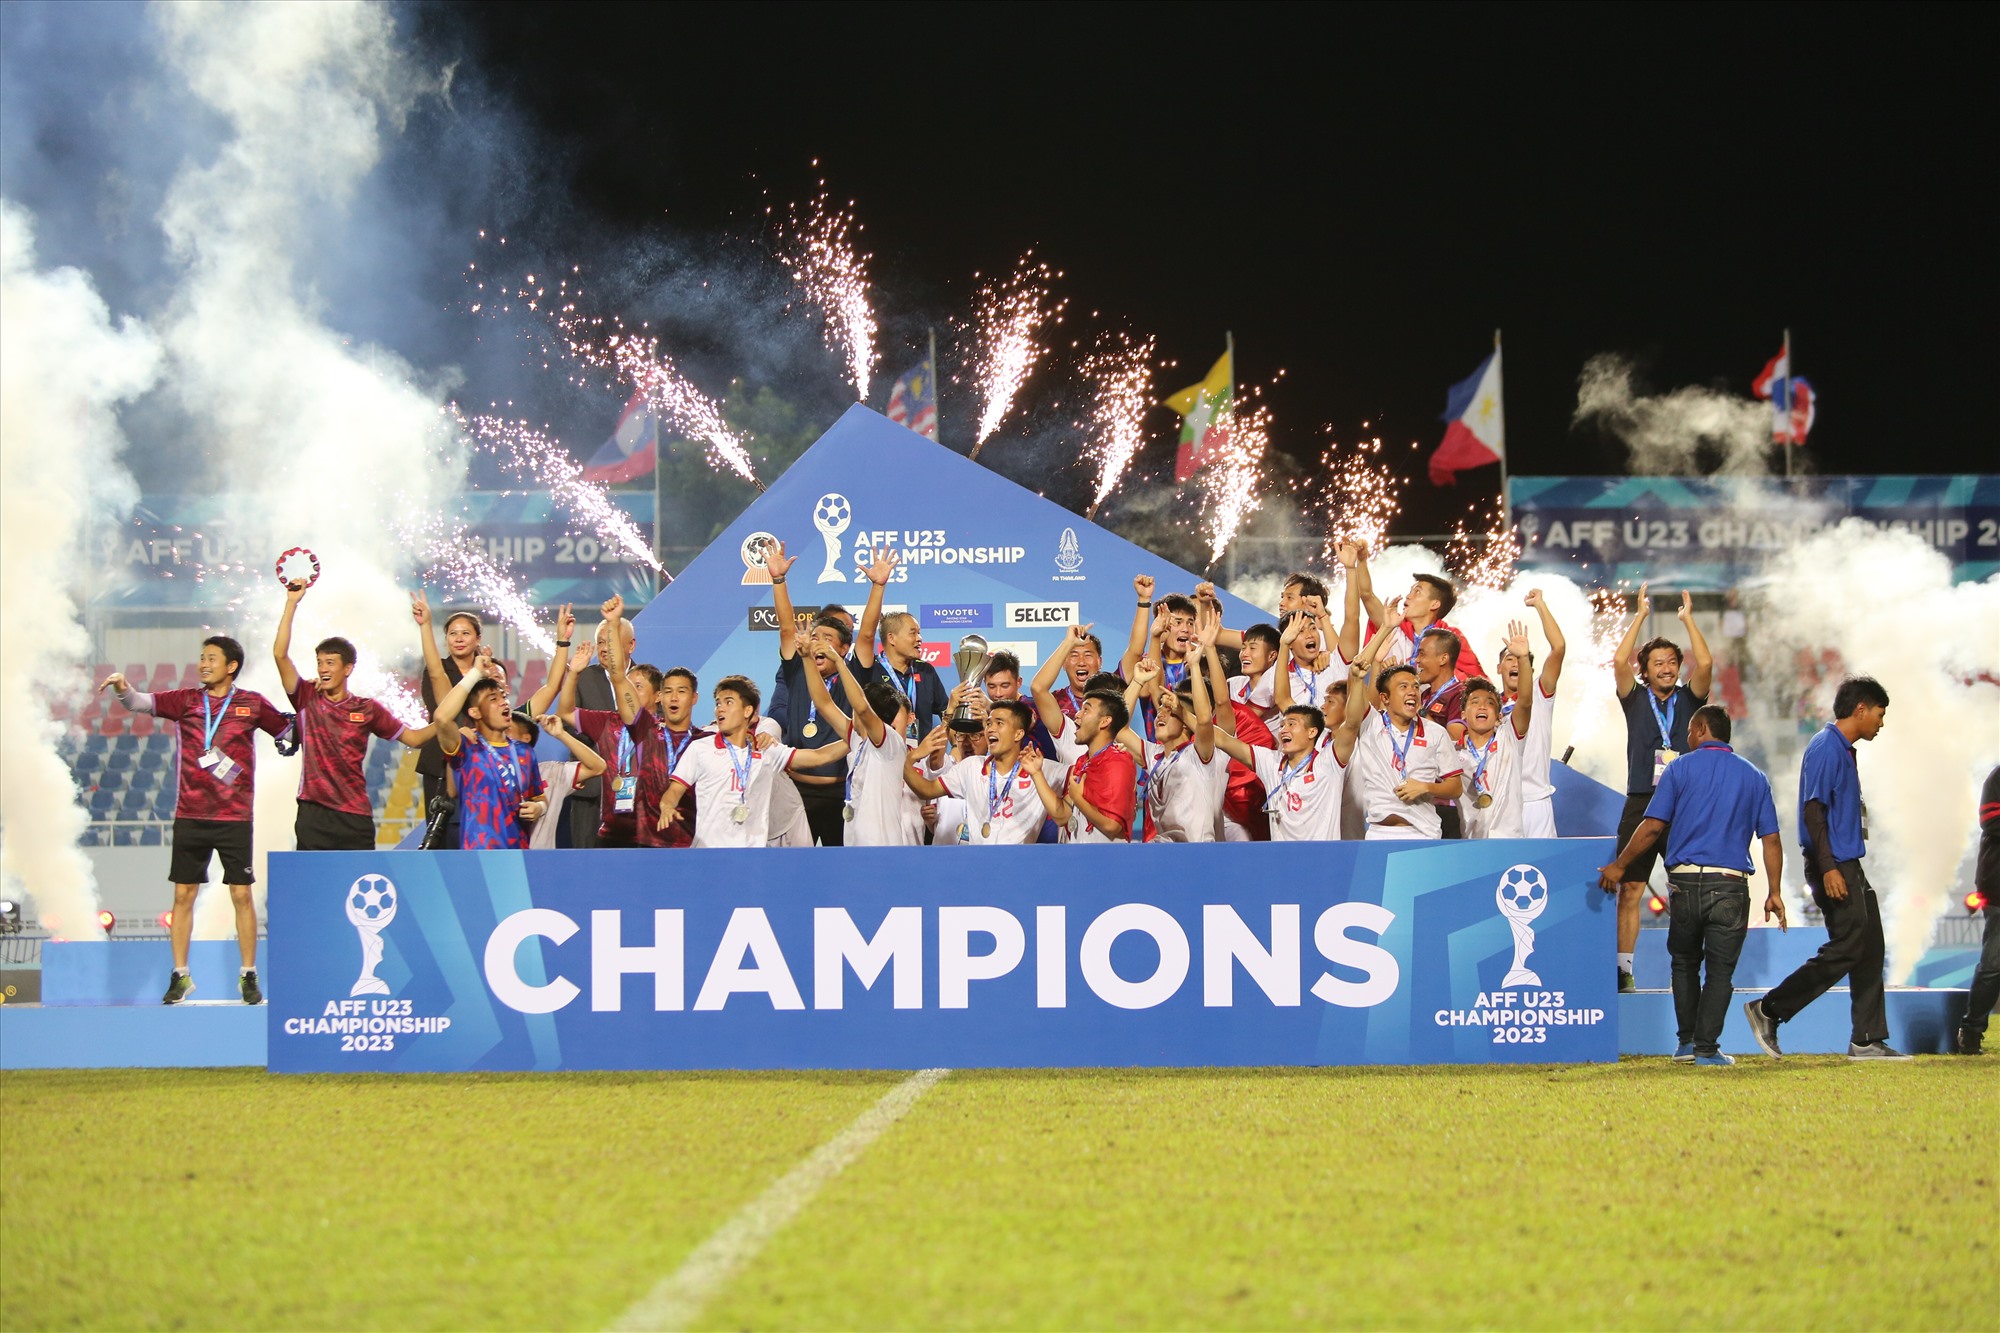 Chiến thắng này cũng giúp U23 Việt Nam tạo nên lịch sử ở đấu trường U23 Đông Nam Á khi trở thành đội đầu tiên có 2 chức vô địch. Càng ý nghĩa hơn khi U23 Việt Nam có 2 lần đăng quang liên tiếp.